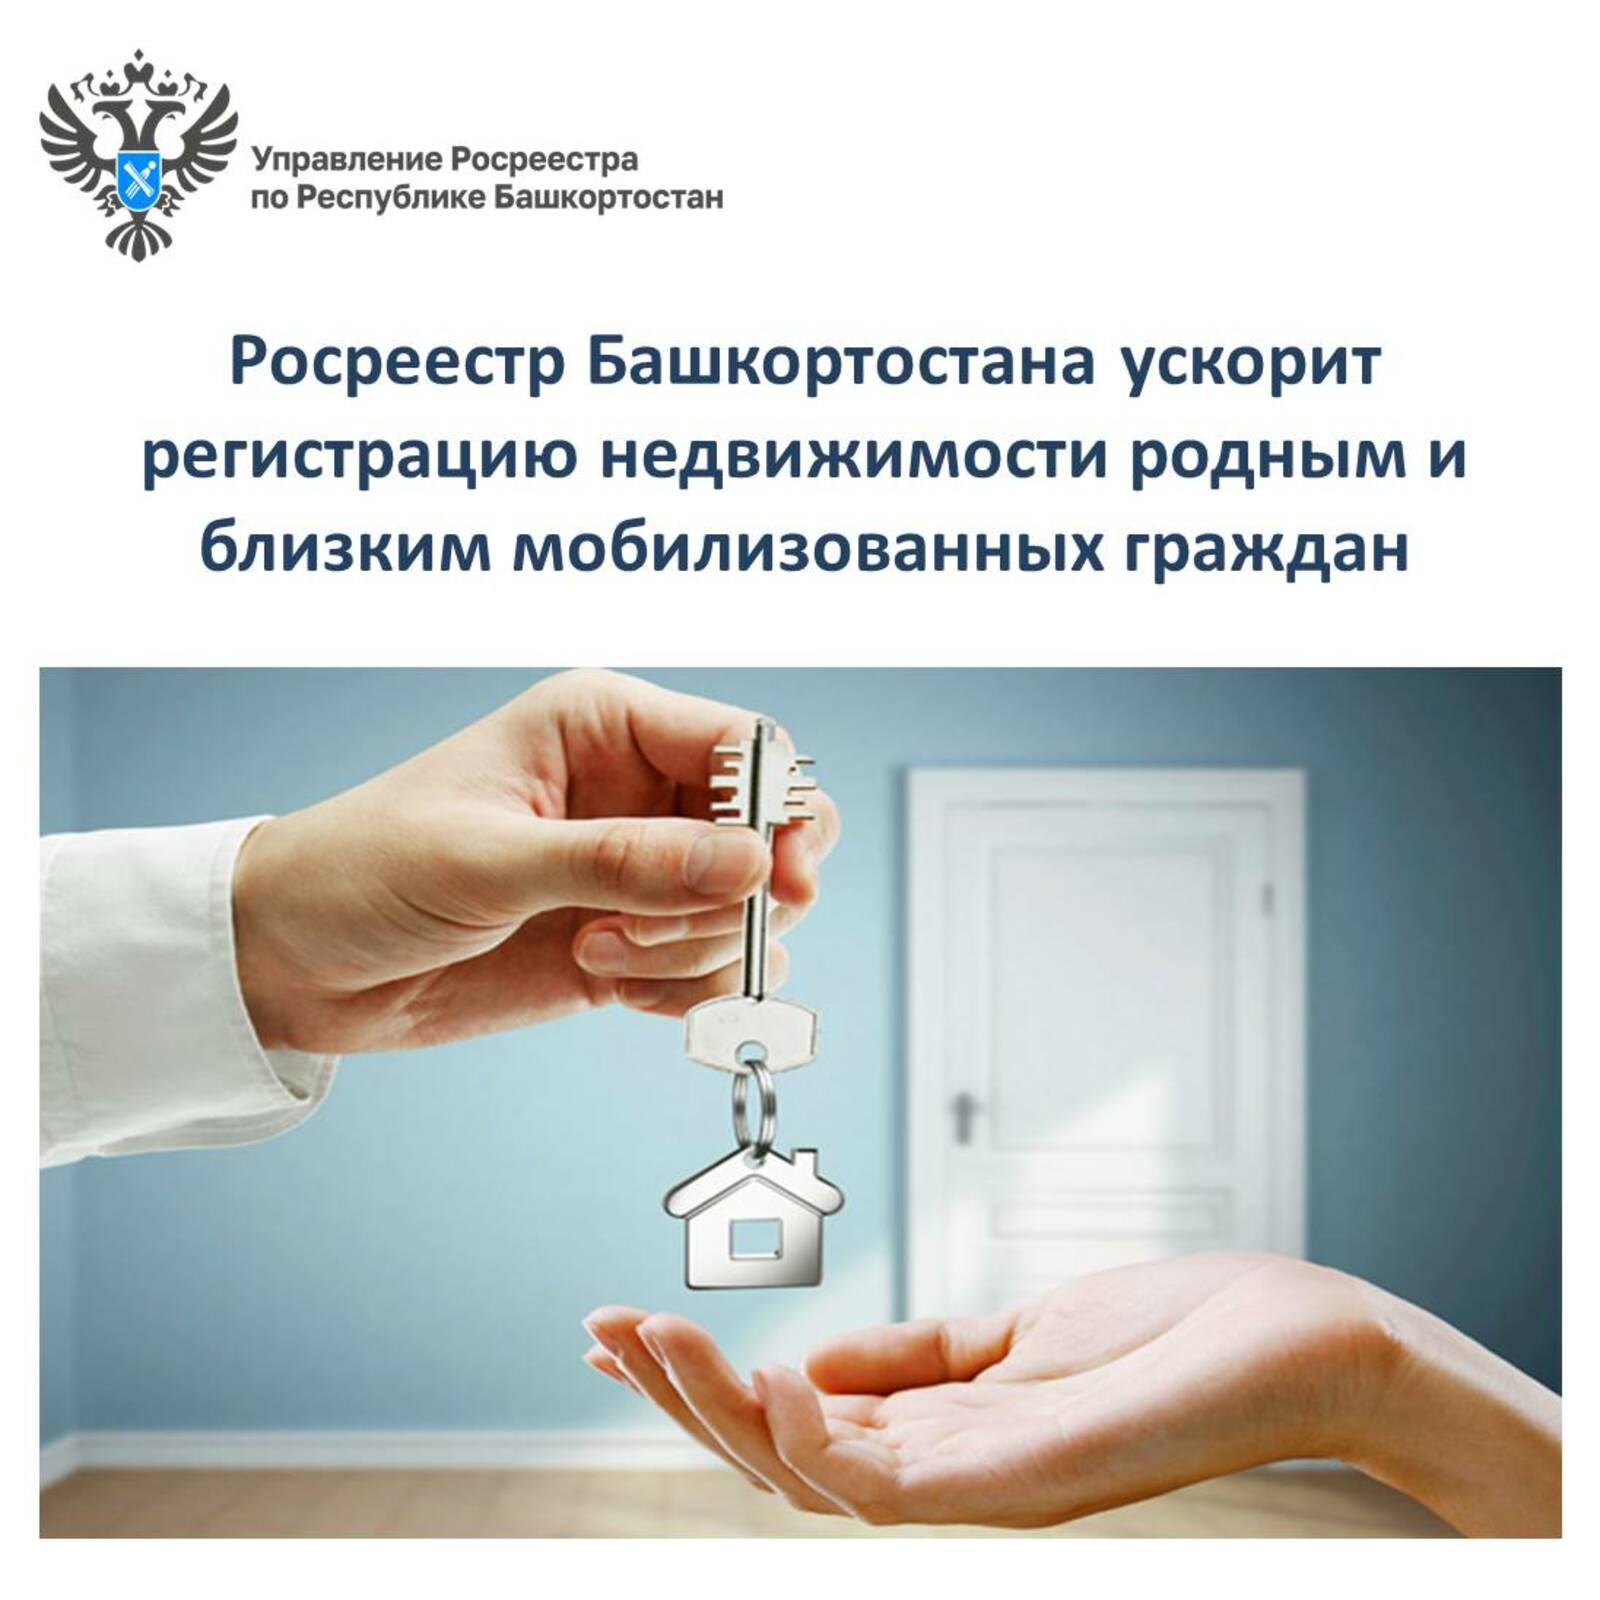 Росреестр Башкортостана ускорит регистрацию недвижимости родным и близким мобилизованных граждан